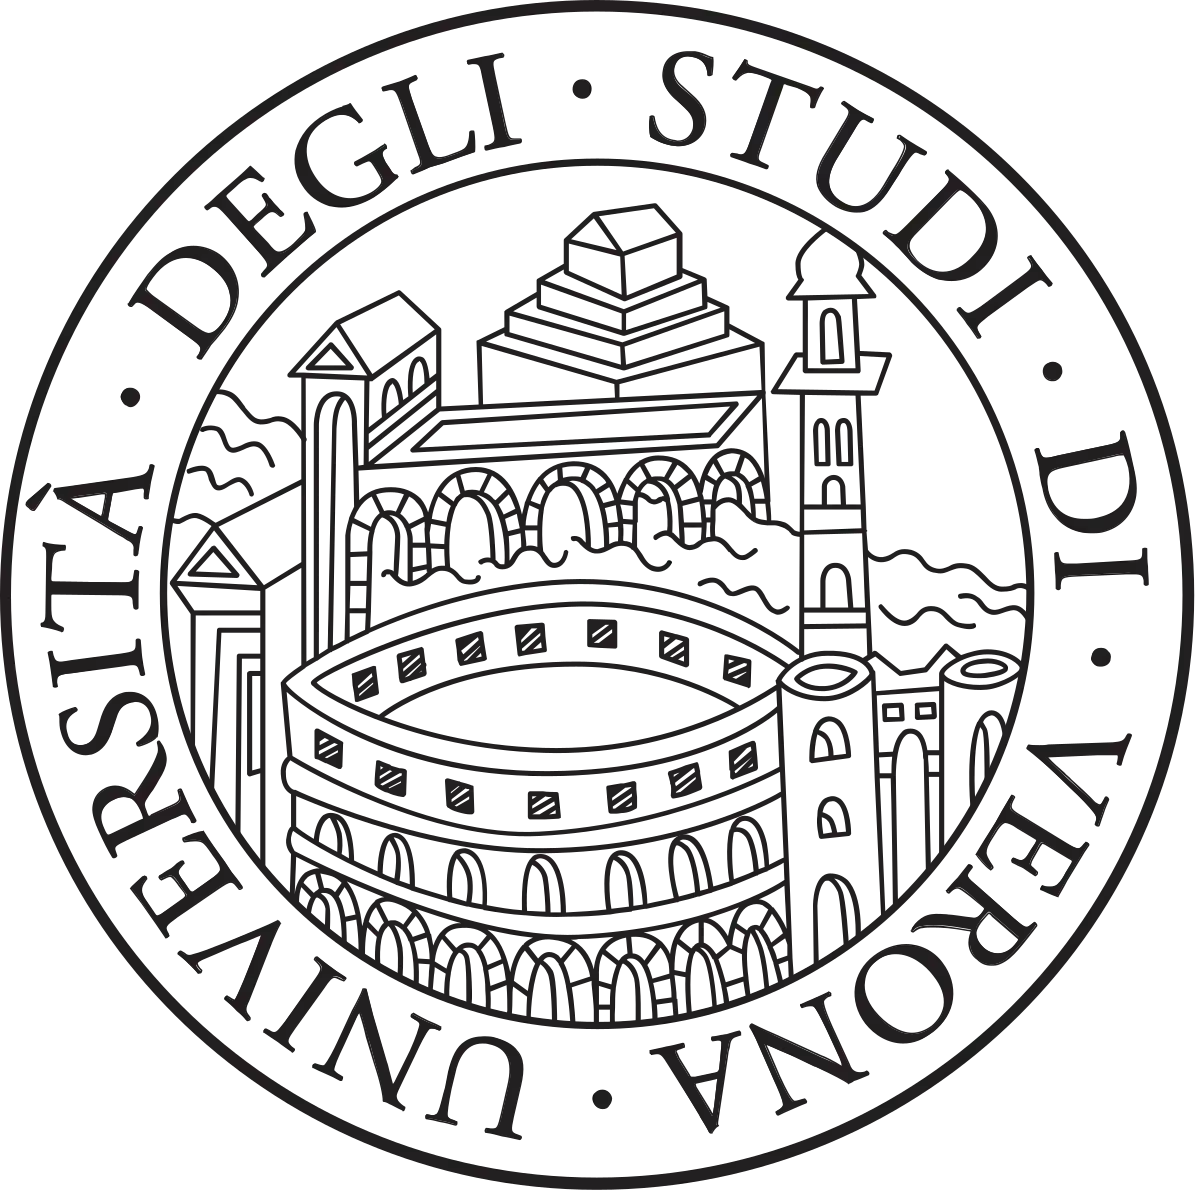 L’Università di Verona compie 40 anni. Fondamentale per lo sviluppo di Verona